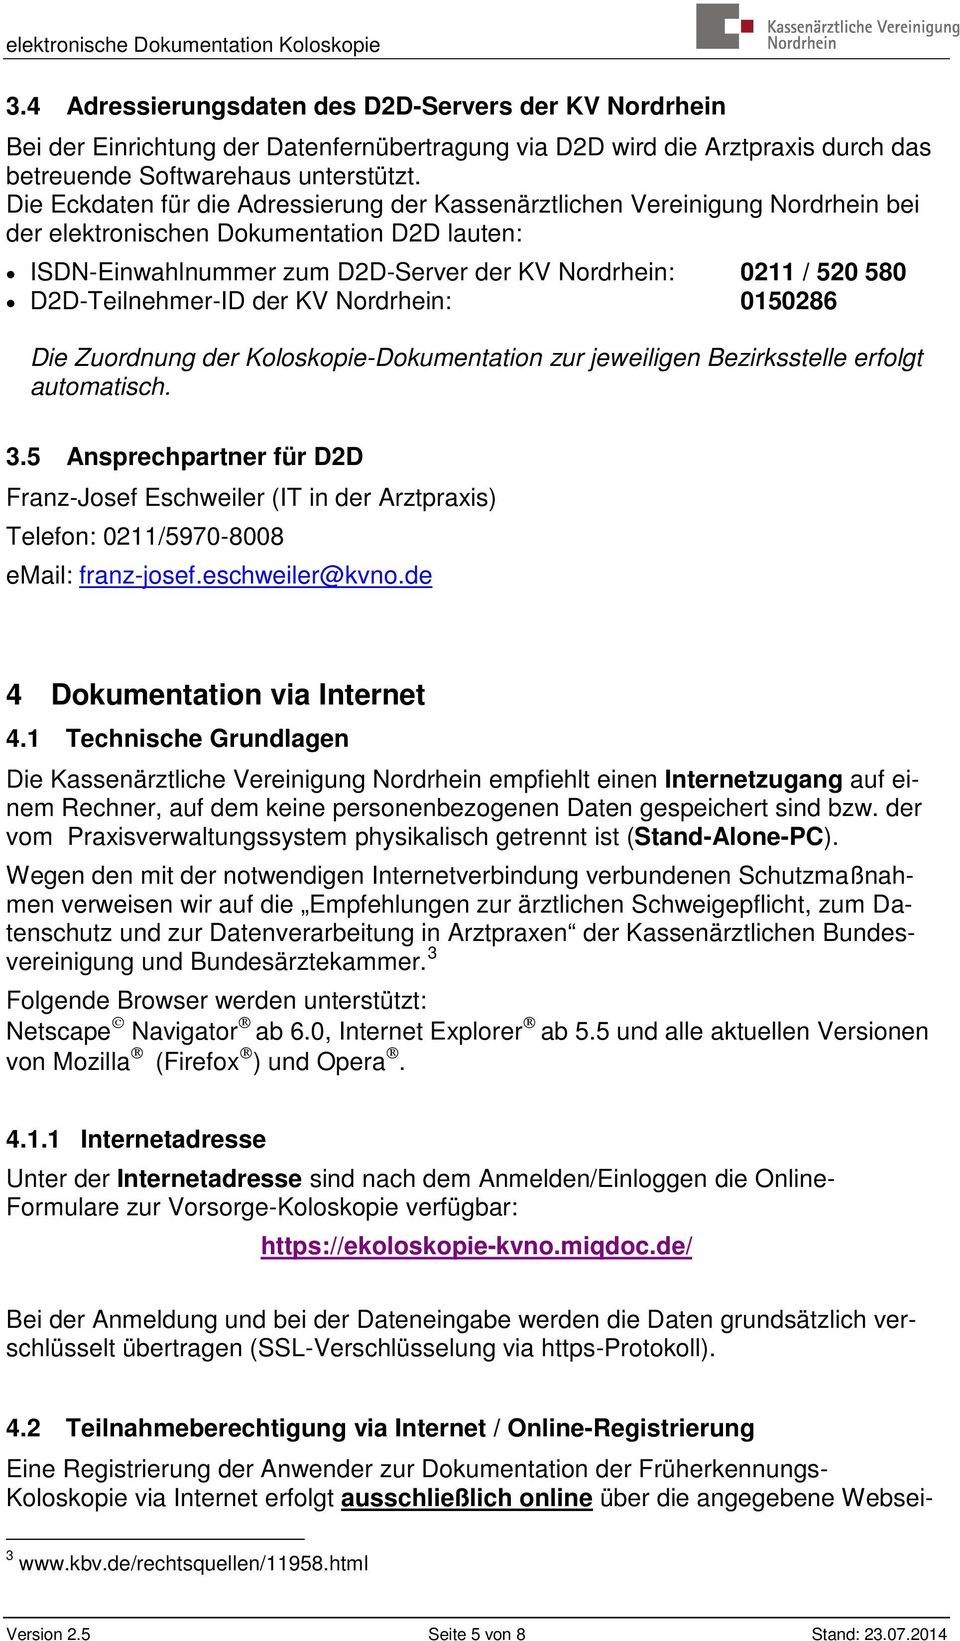 D2D-Teilnehmer-ID der KV Nordrhein: 0150286 Die Zuordnung der Koloskopie-Dokumentation zur jeweiligen Bezirksstelle erfolgt automatisch. 3.